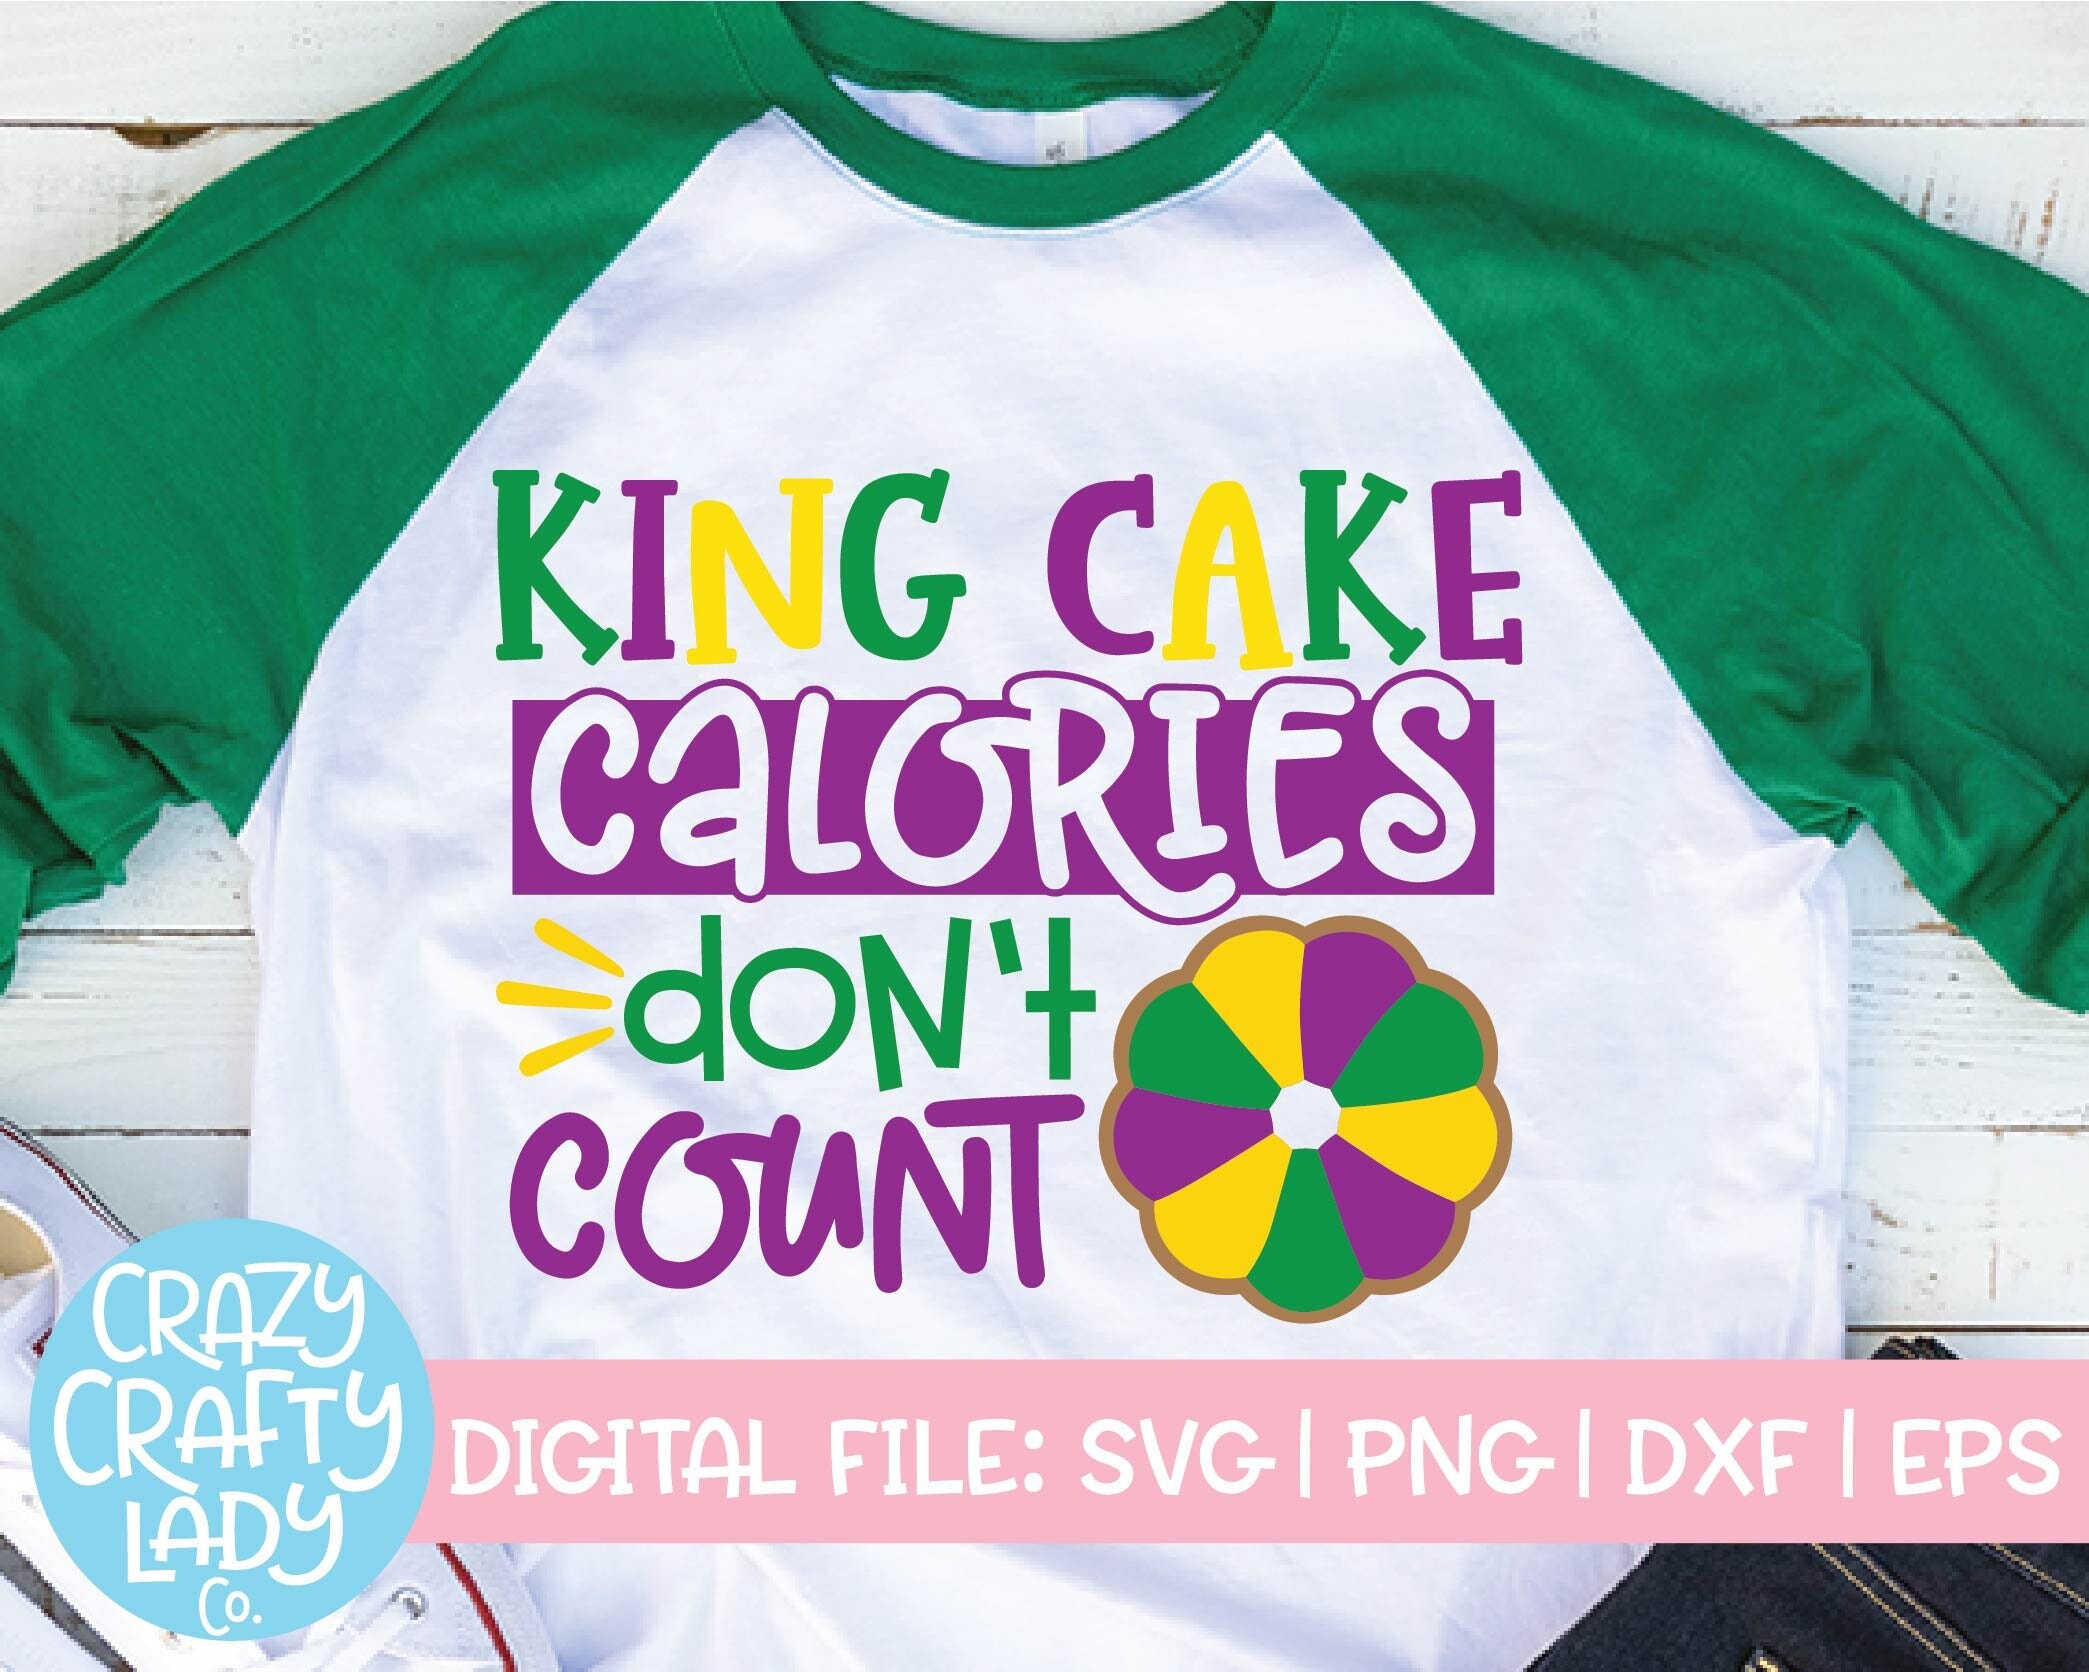 King Cake Calories Don